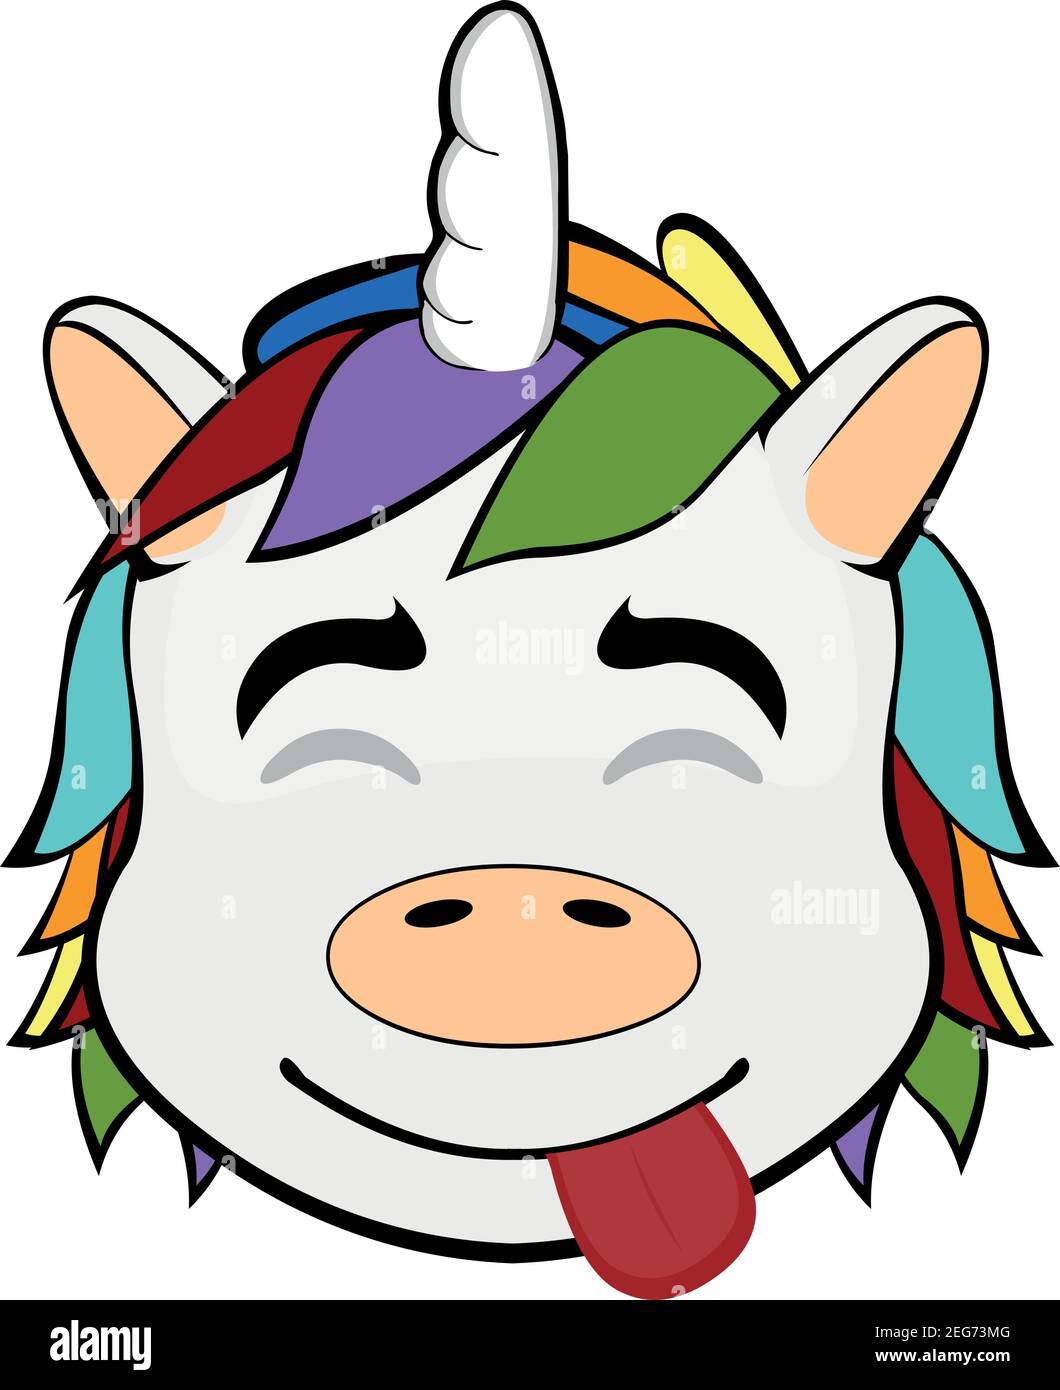 Illustration vectorielle d'émoticône représentant la tête d'une licorne avec une expression joyeuse de plaisir, les yeux fermés et la langue Illustration de Vecteur